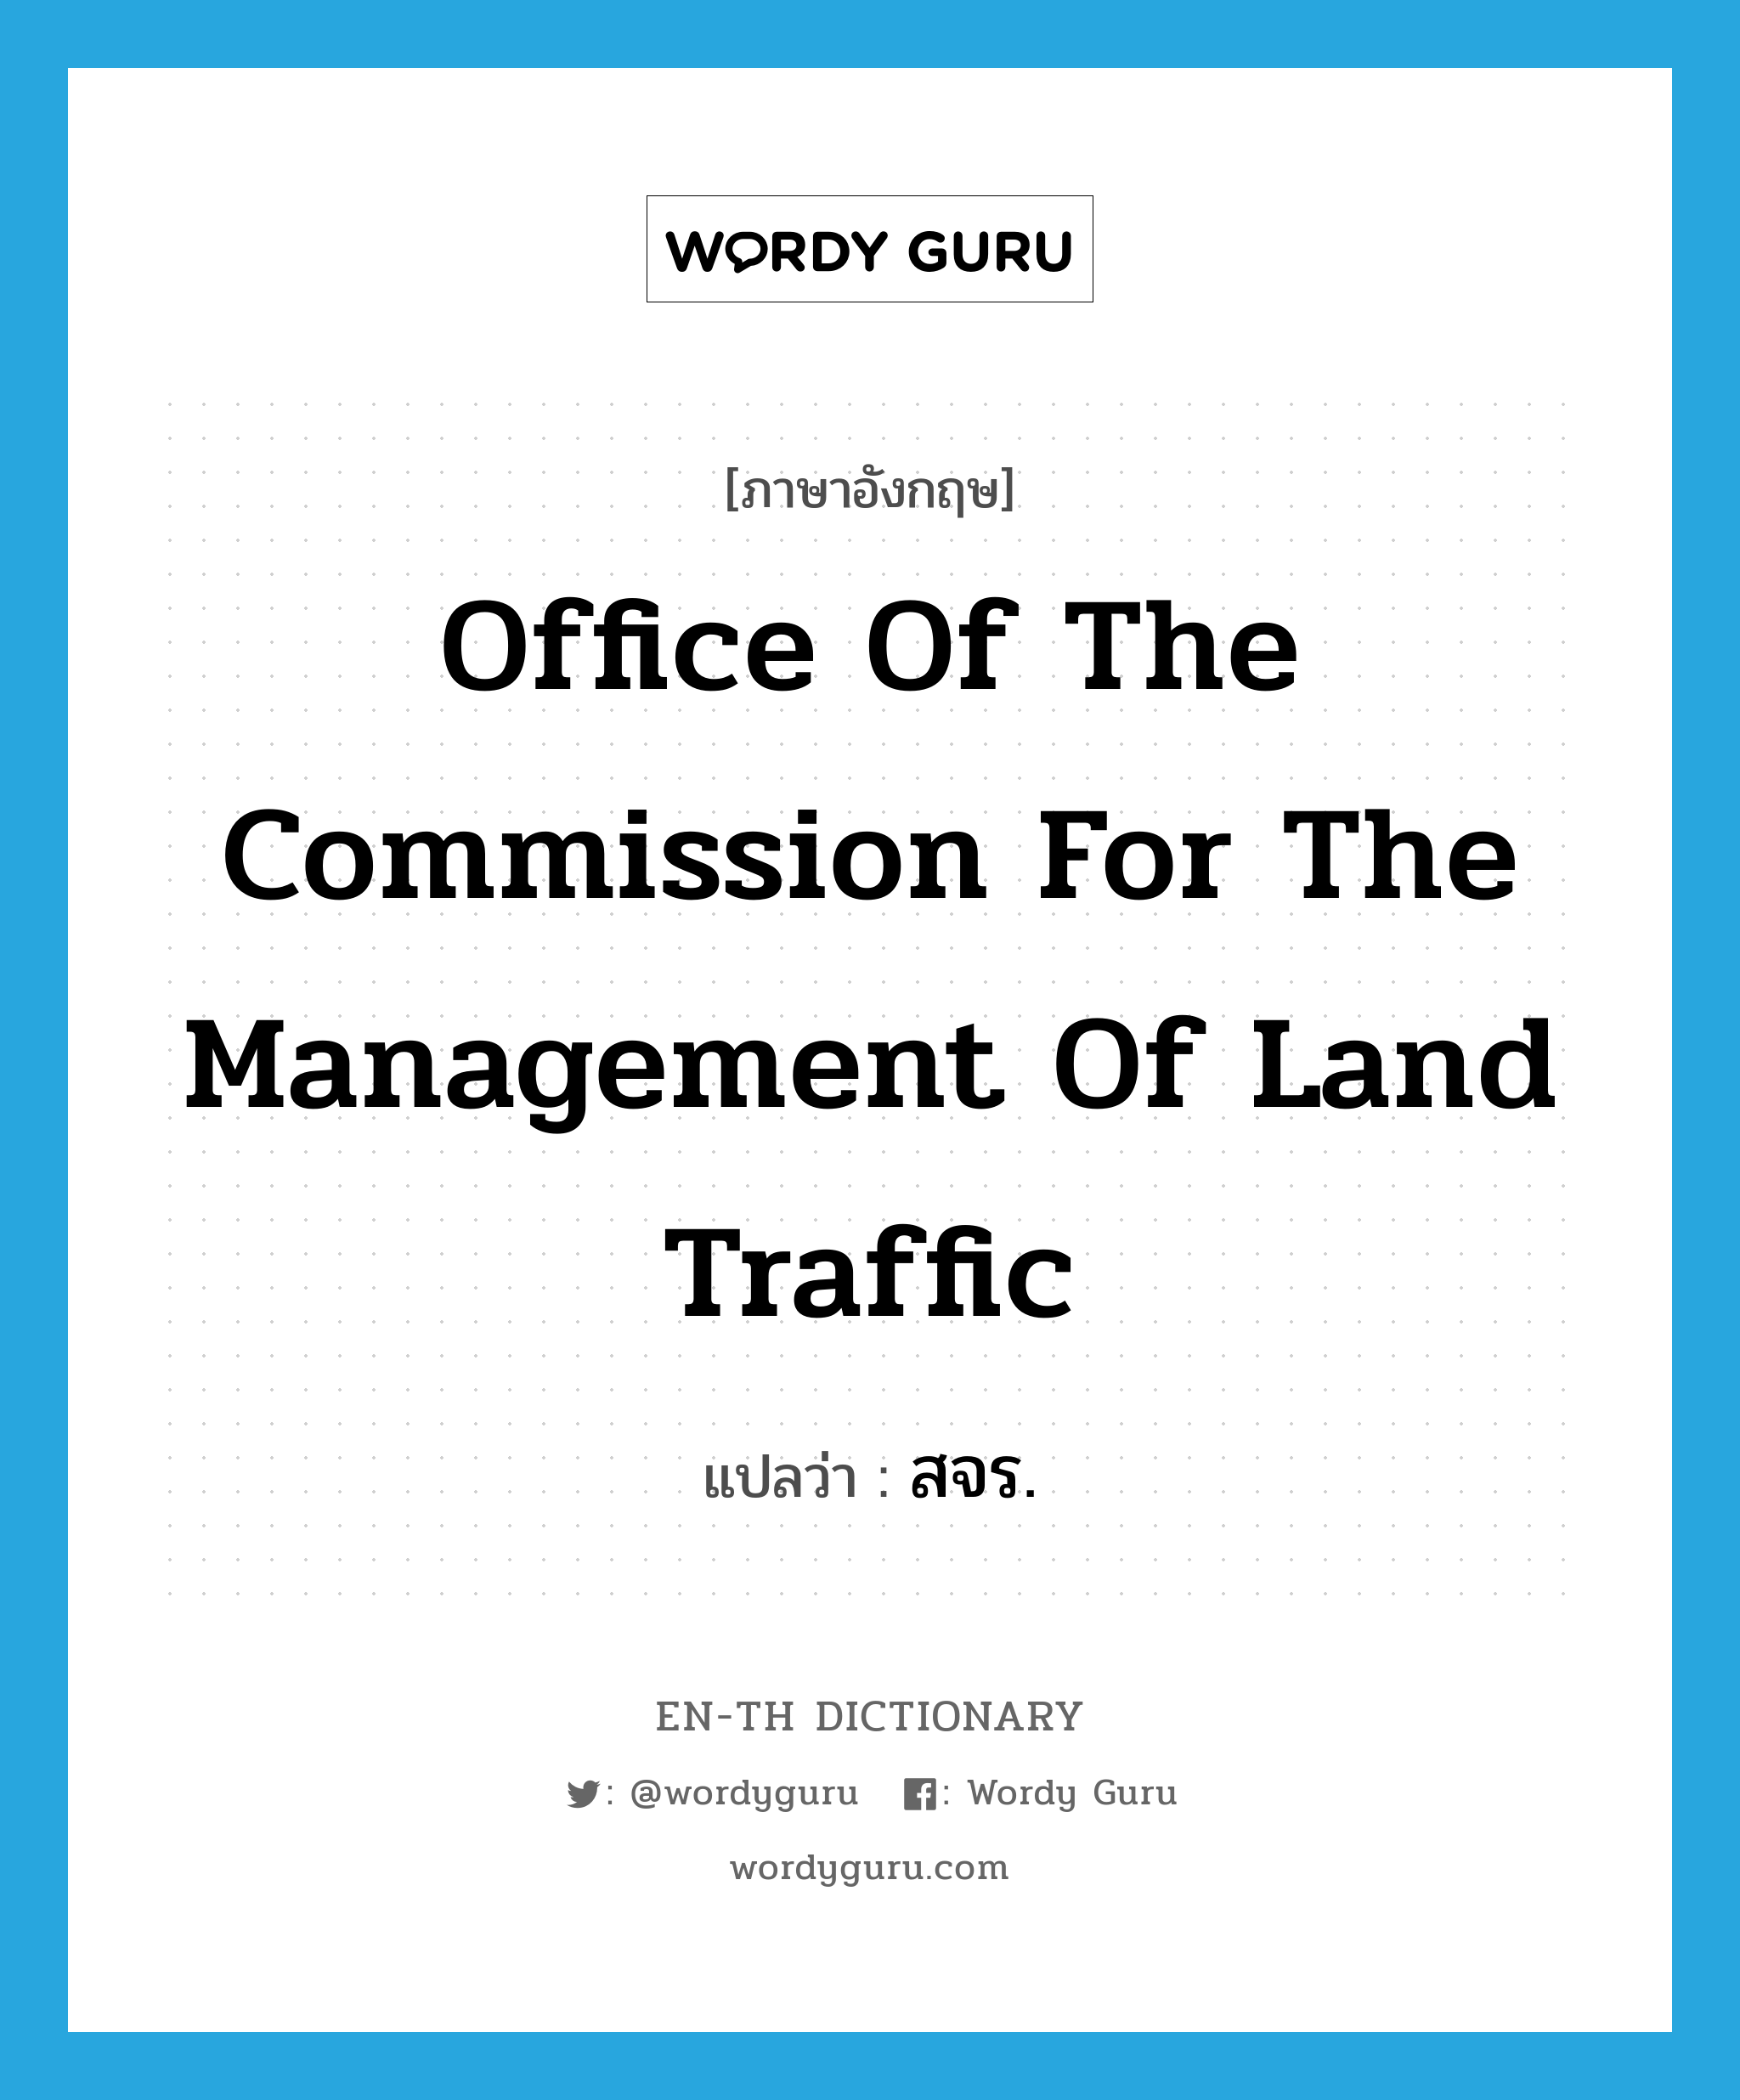 สจร. ภาษาอังกฤษ?, คำศัพท์ภาษาอังกฤษ สจร. แปลว่า Office of the Commission for the Management of Land Traffic ประเภท N หมวด N